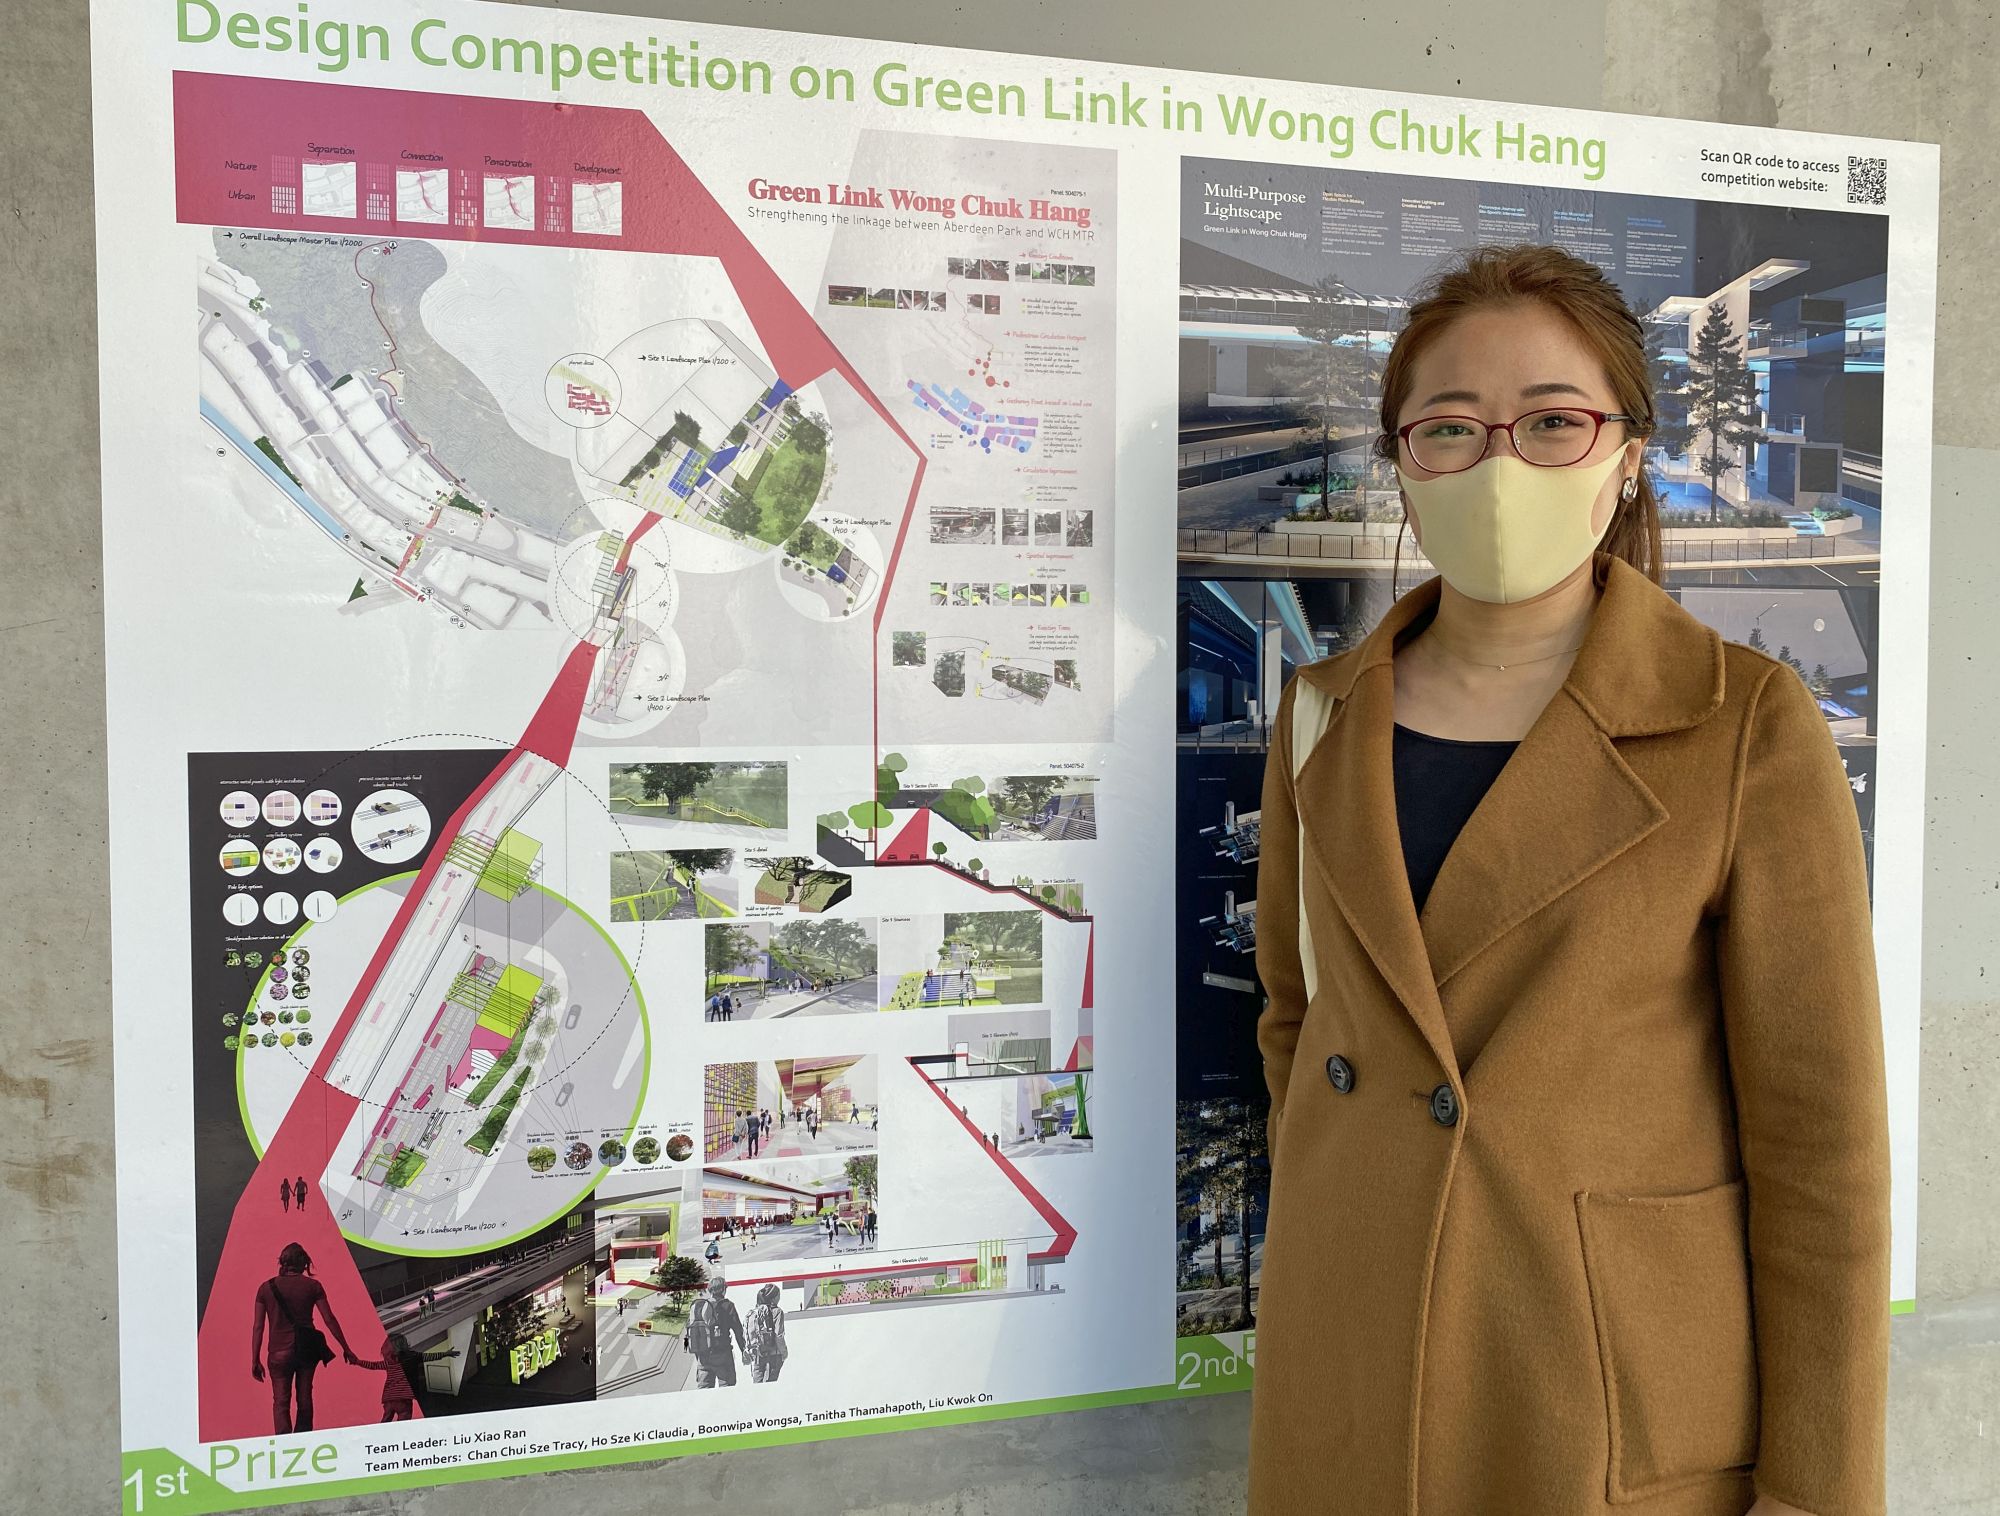 園境師劉瀟然帶領的團隊在「黃竹坑綠色連線」設計比賽中獲得冠軍。圖左為獲獎作品的設計構想圖。